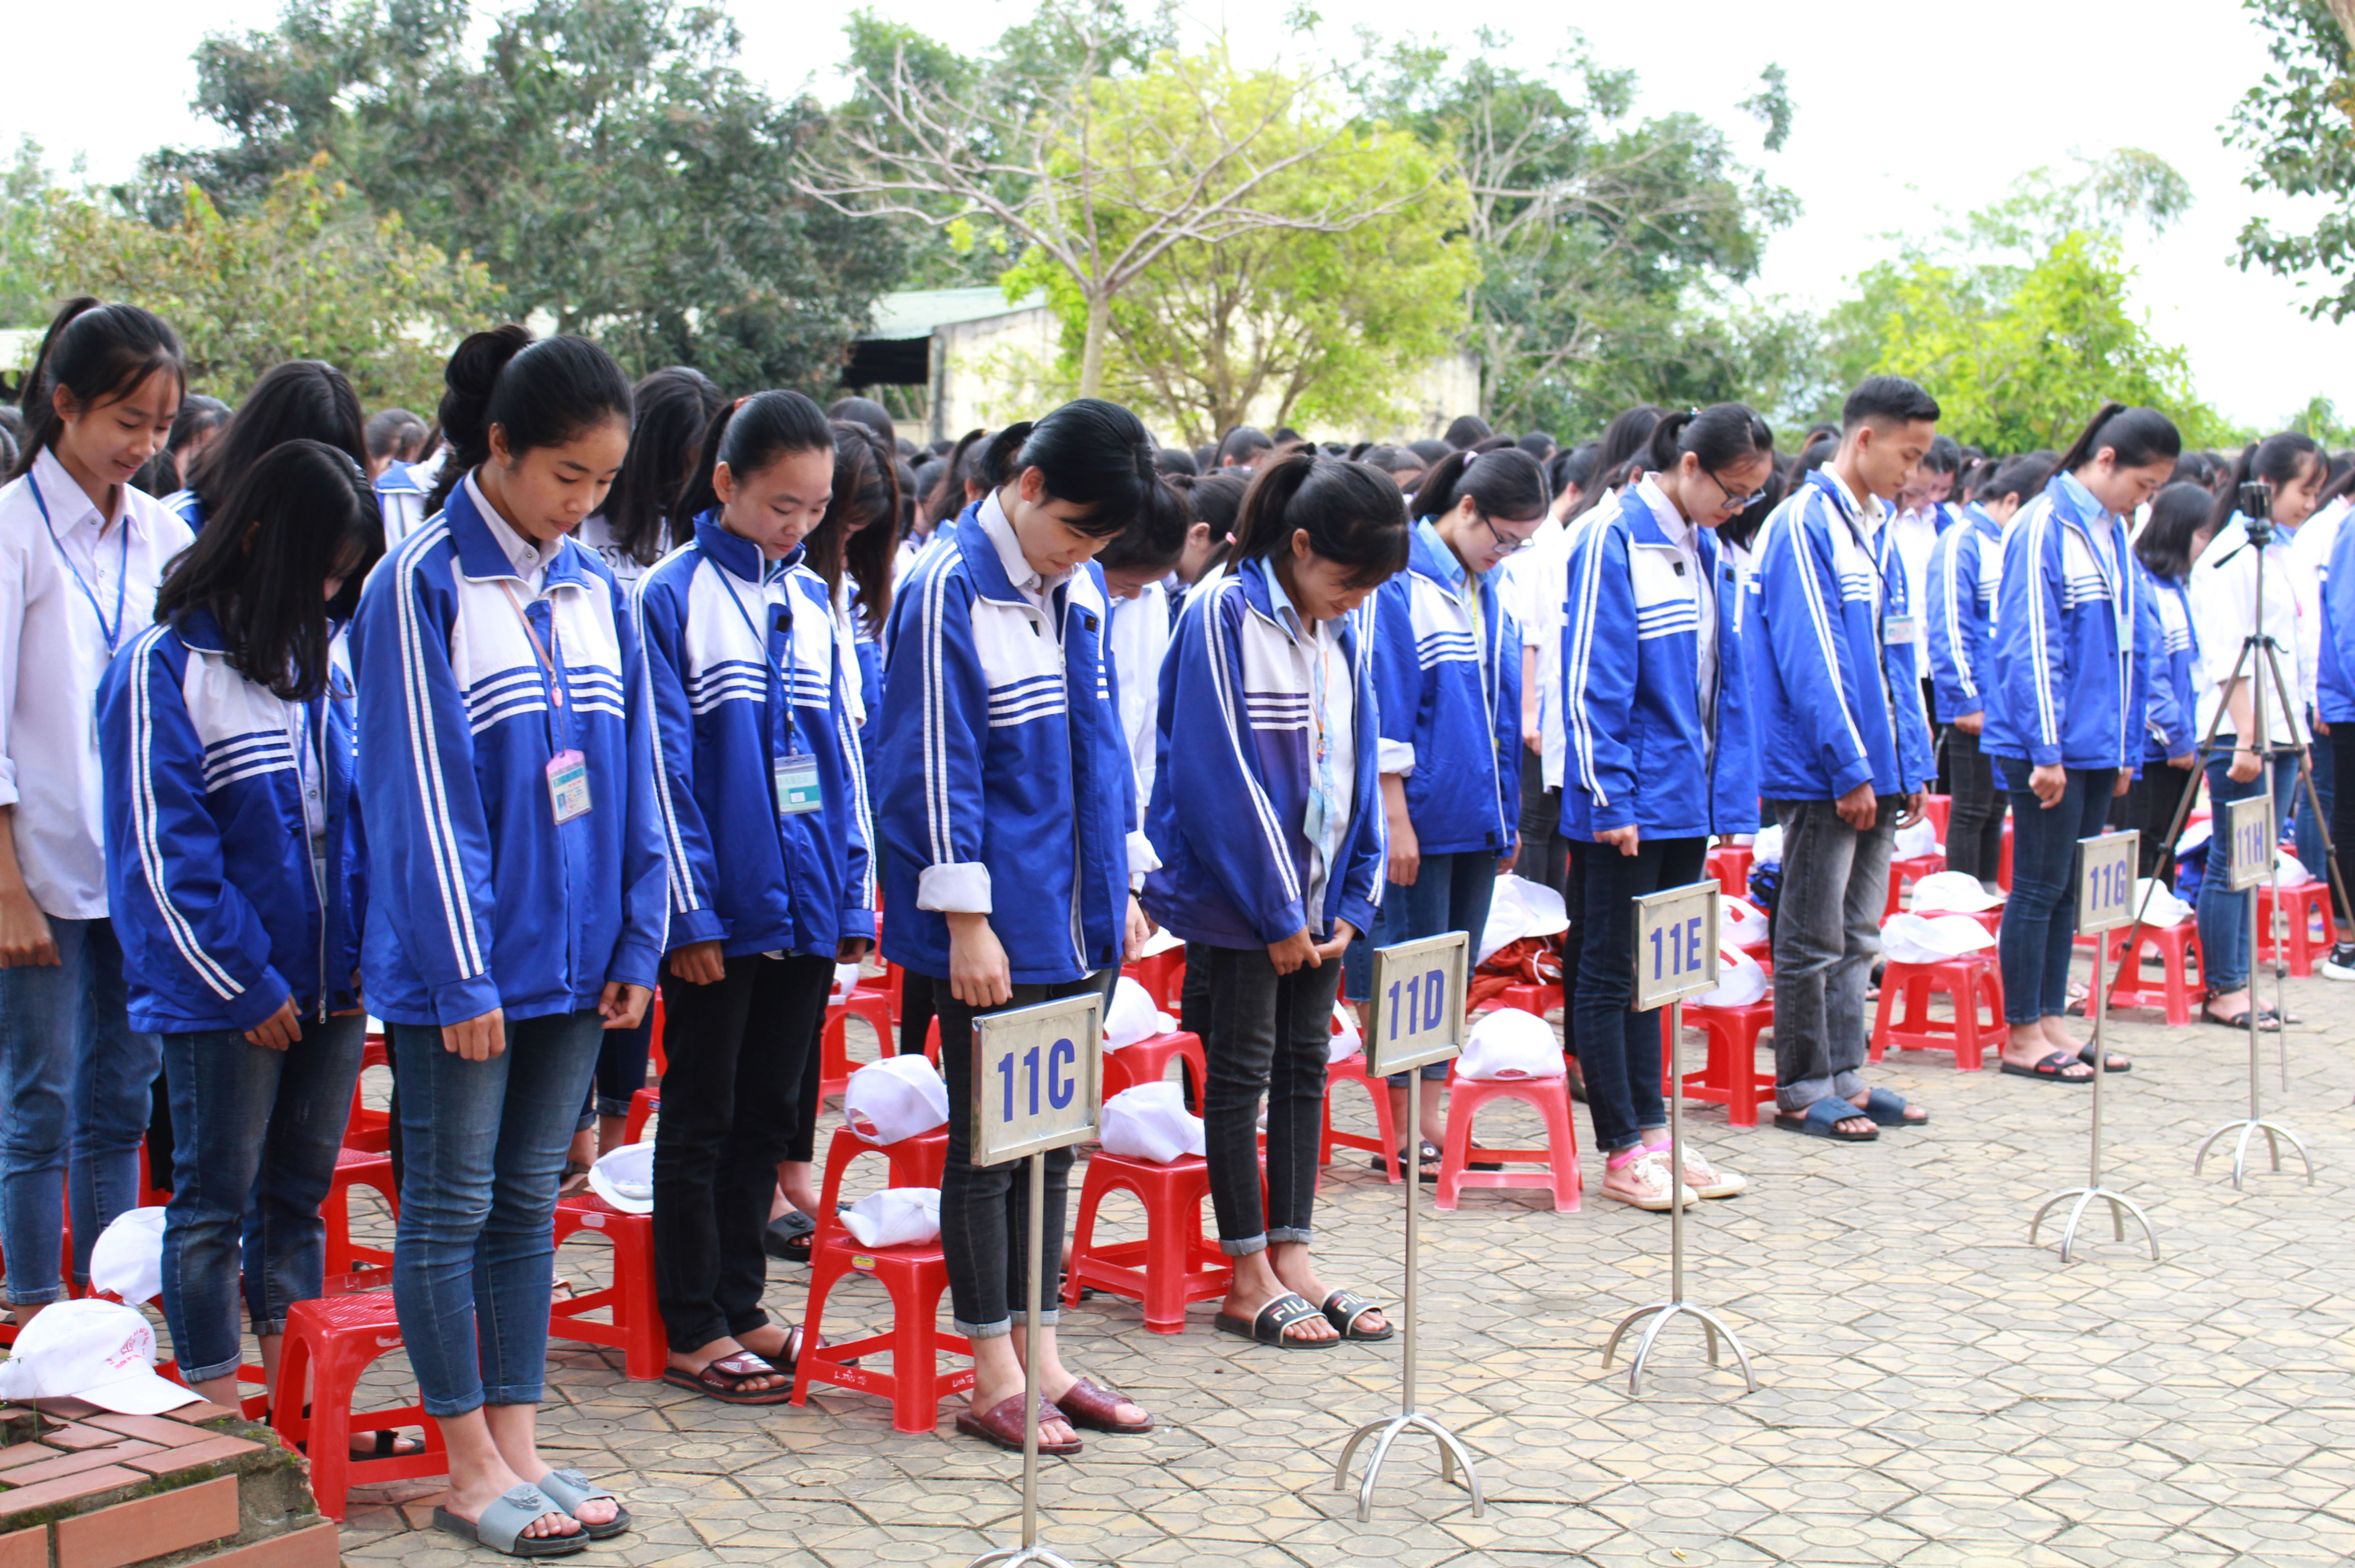 Cũng trong dịp này, học sinh các trường THPT tại huyện Thanh Chương mặc niệm tưởng nhớ tới cố Thủ tướng Phan Văn Khải - một trong những nhà lãnh đạo cấp cao của Đảng và Nhà nước ở chặng đường đầu của công cuộc đổi mới, phát triển đất nước. Ảnh: Phương Thúy